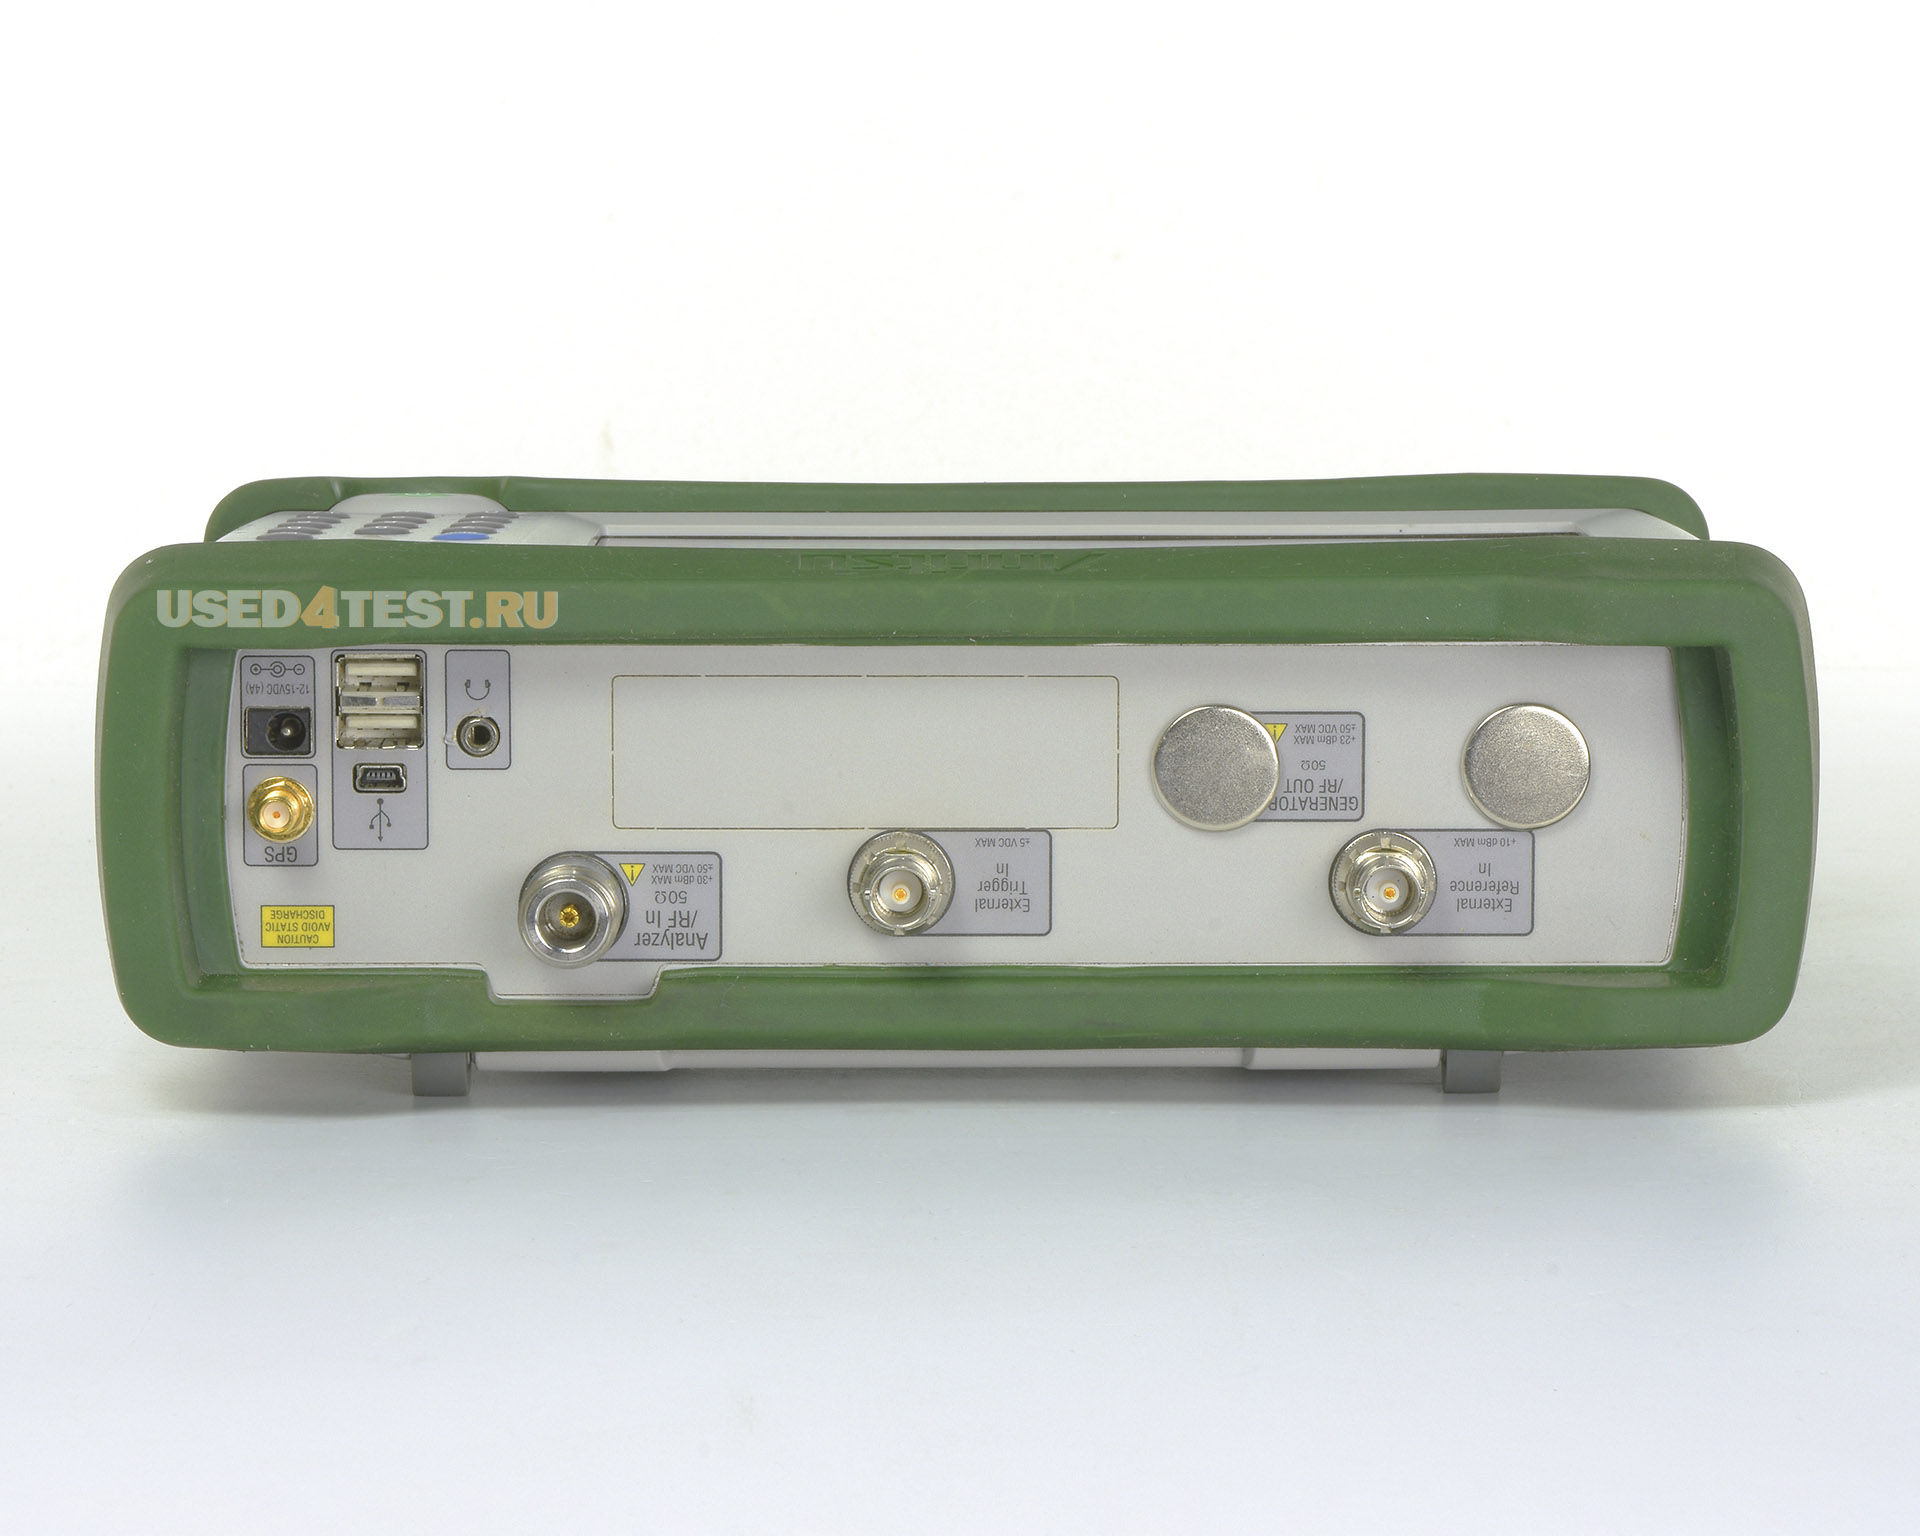 Портативный анализатор спектра Spectrum Master Anritsu MS2712Eс диапазоном от 9 кГц до 4 ГГц
 Стоимость указана в Рублях DDP Москва по безналичному расчету включая НДС 20%
